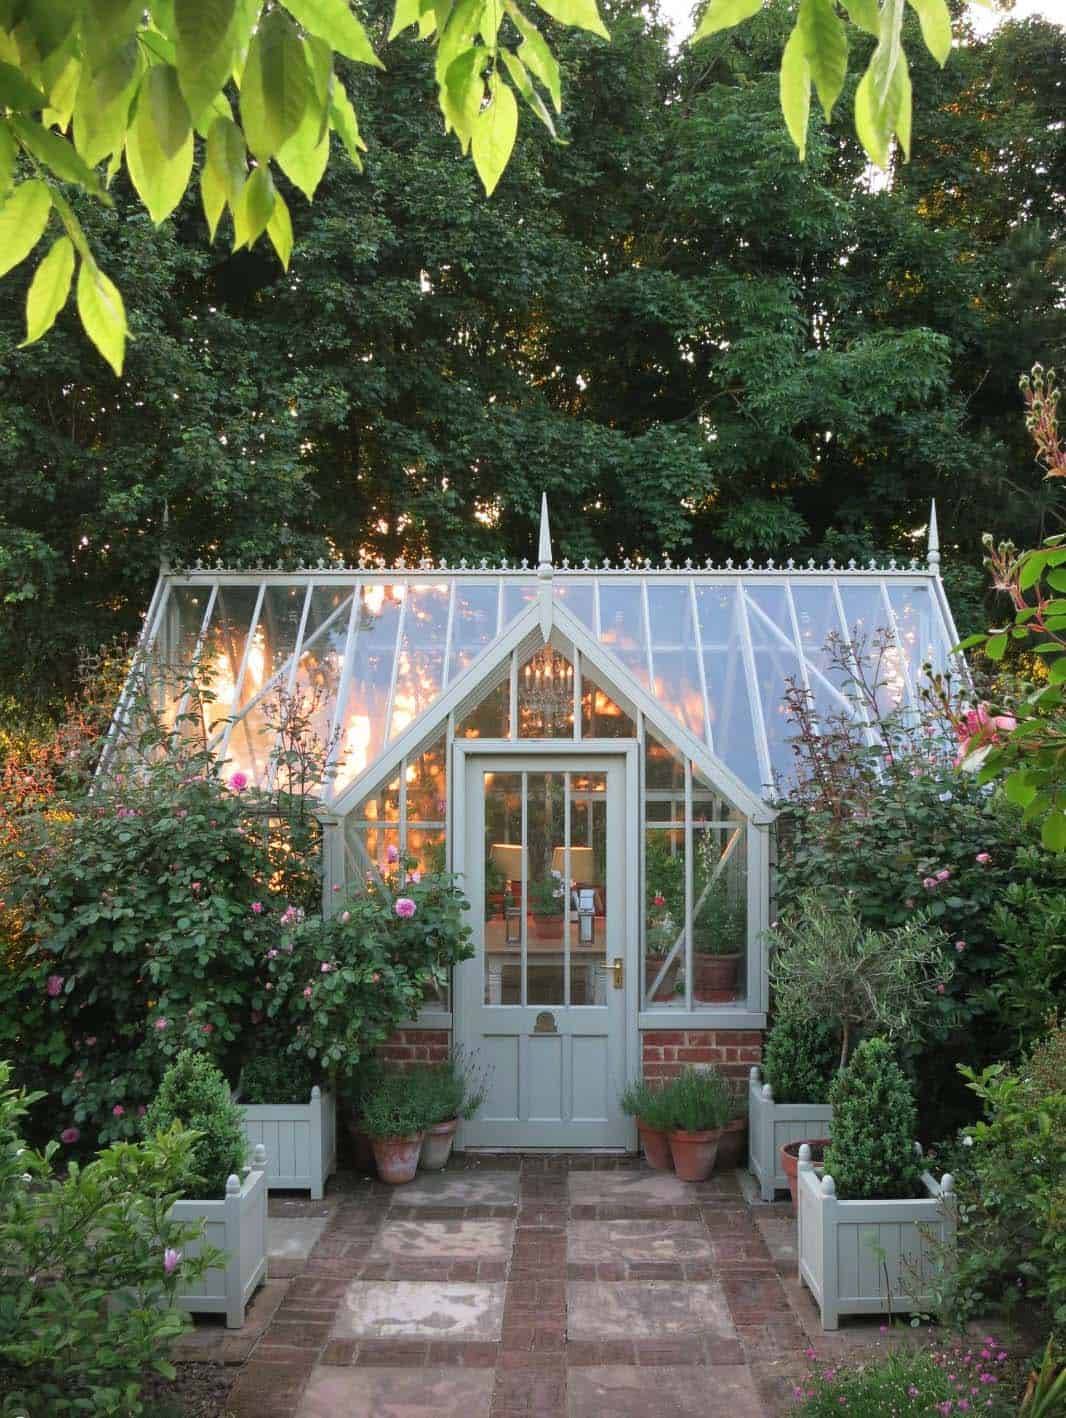 Wonderful Backyard Greenhouse Ideas